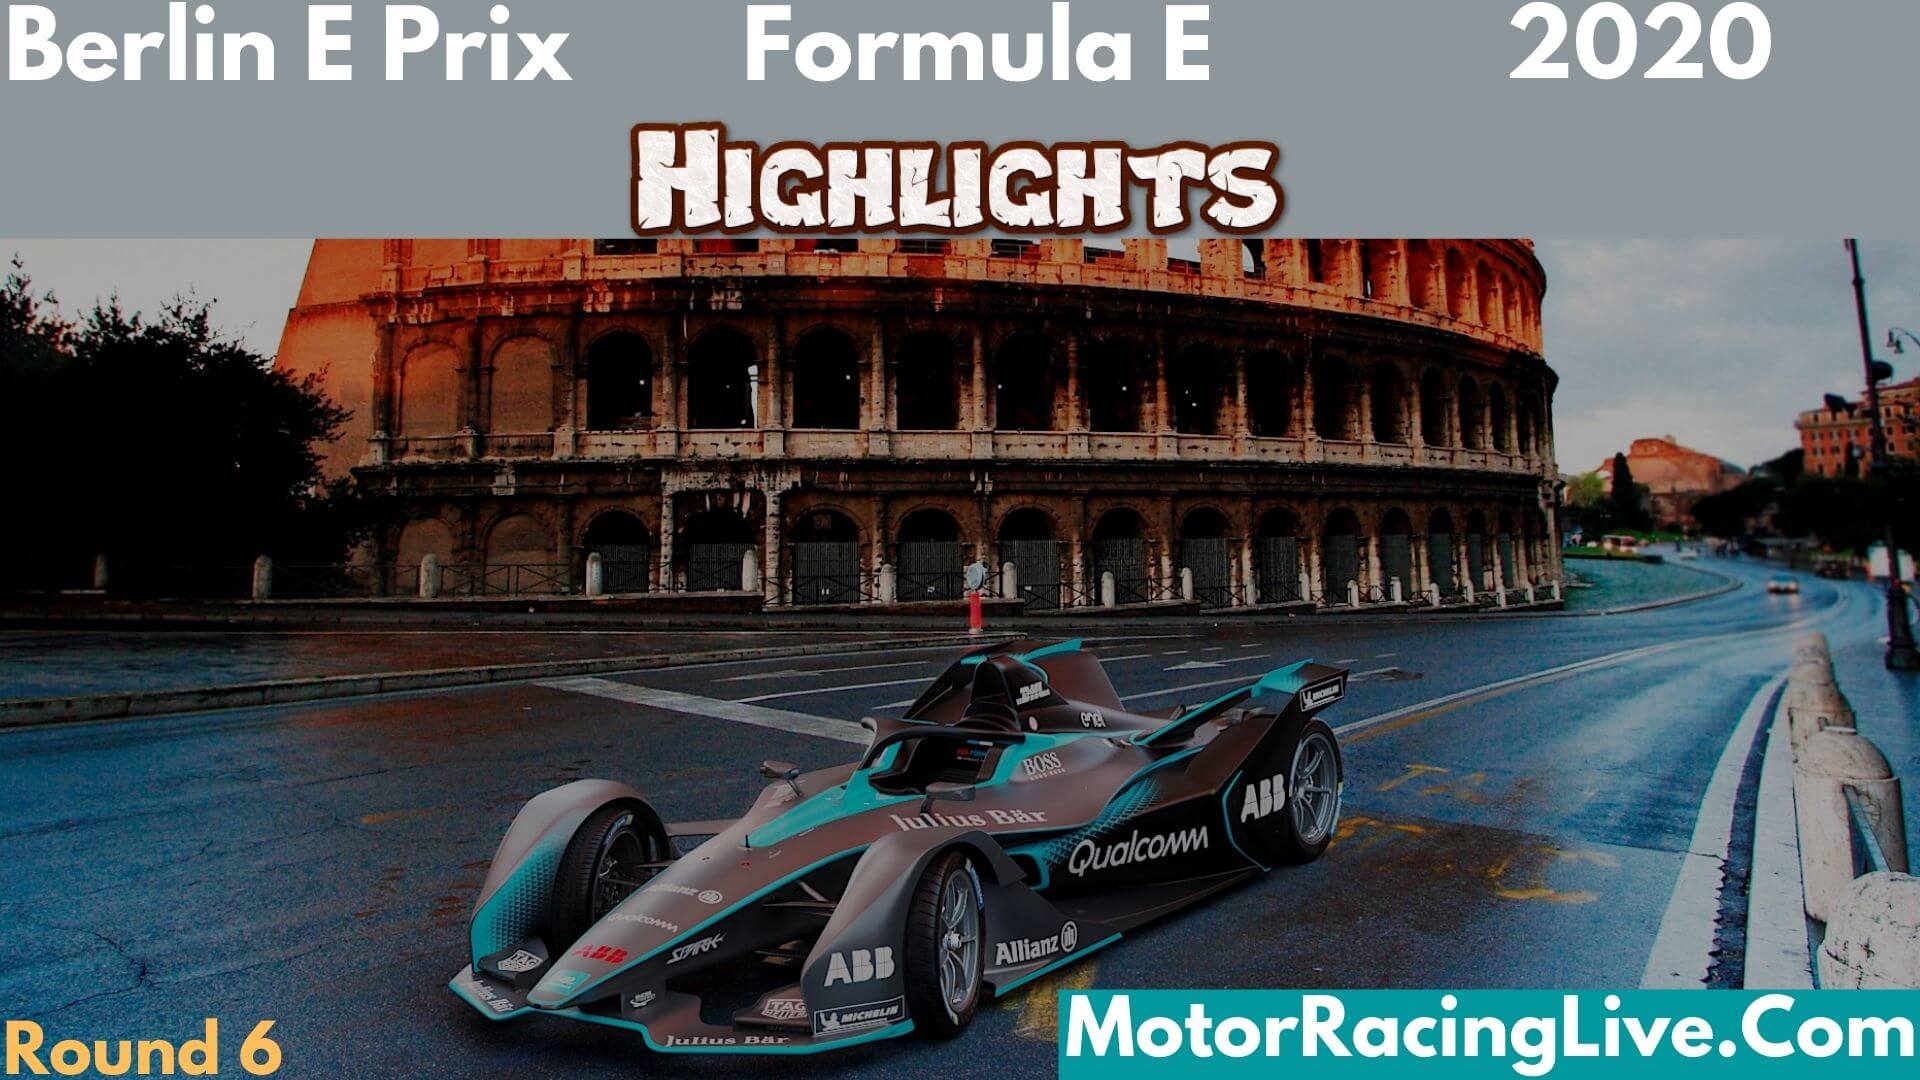 Berlin E Prix Round 6 Formula E 2020 Highlights